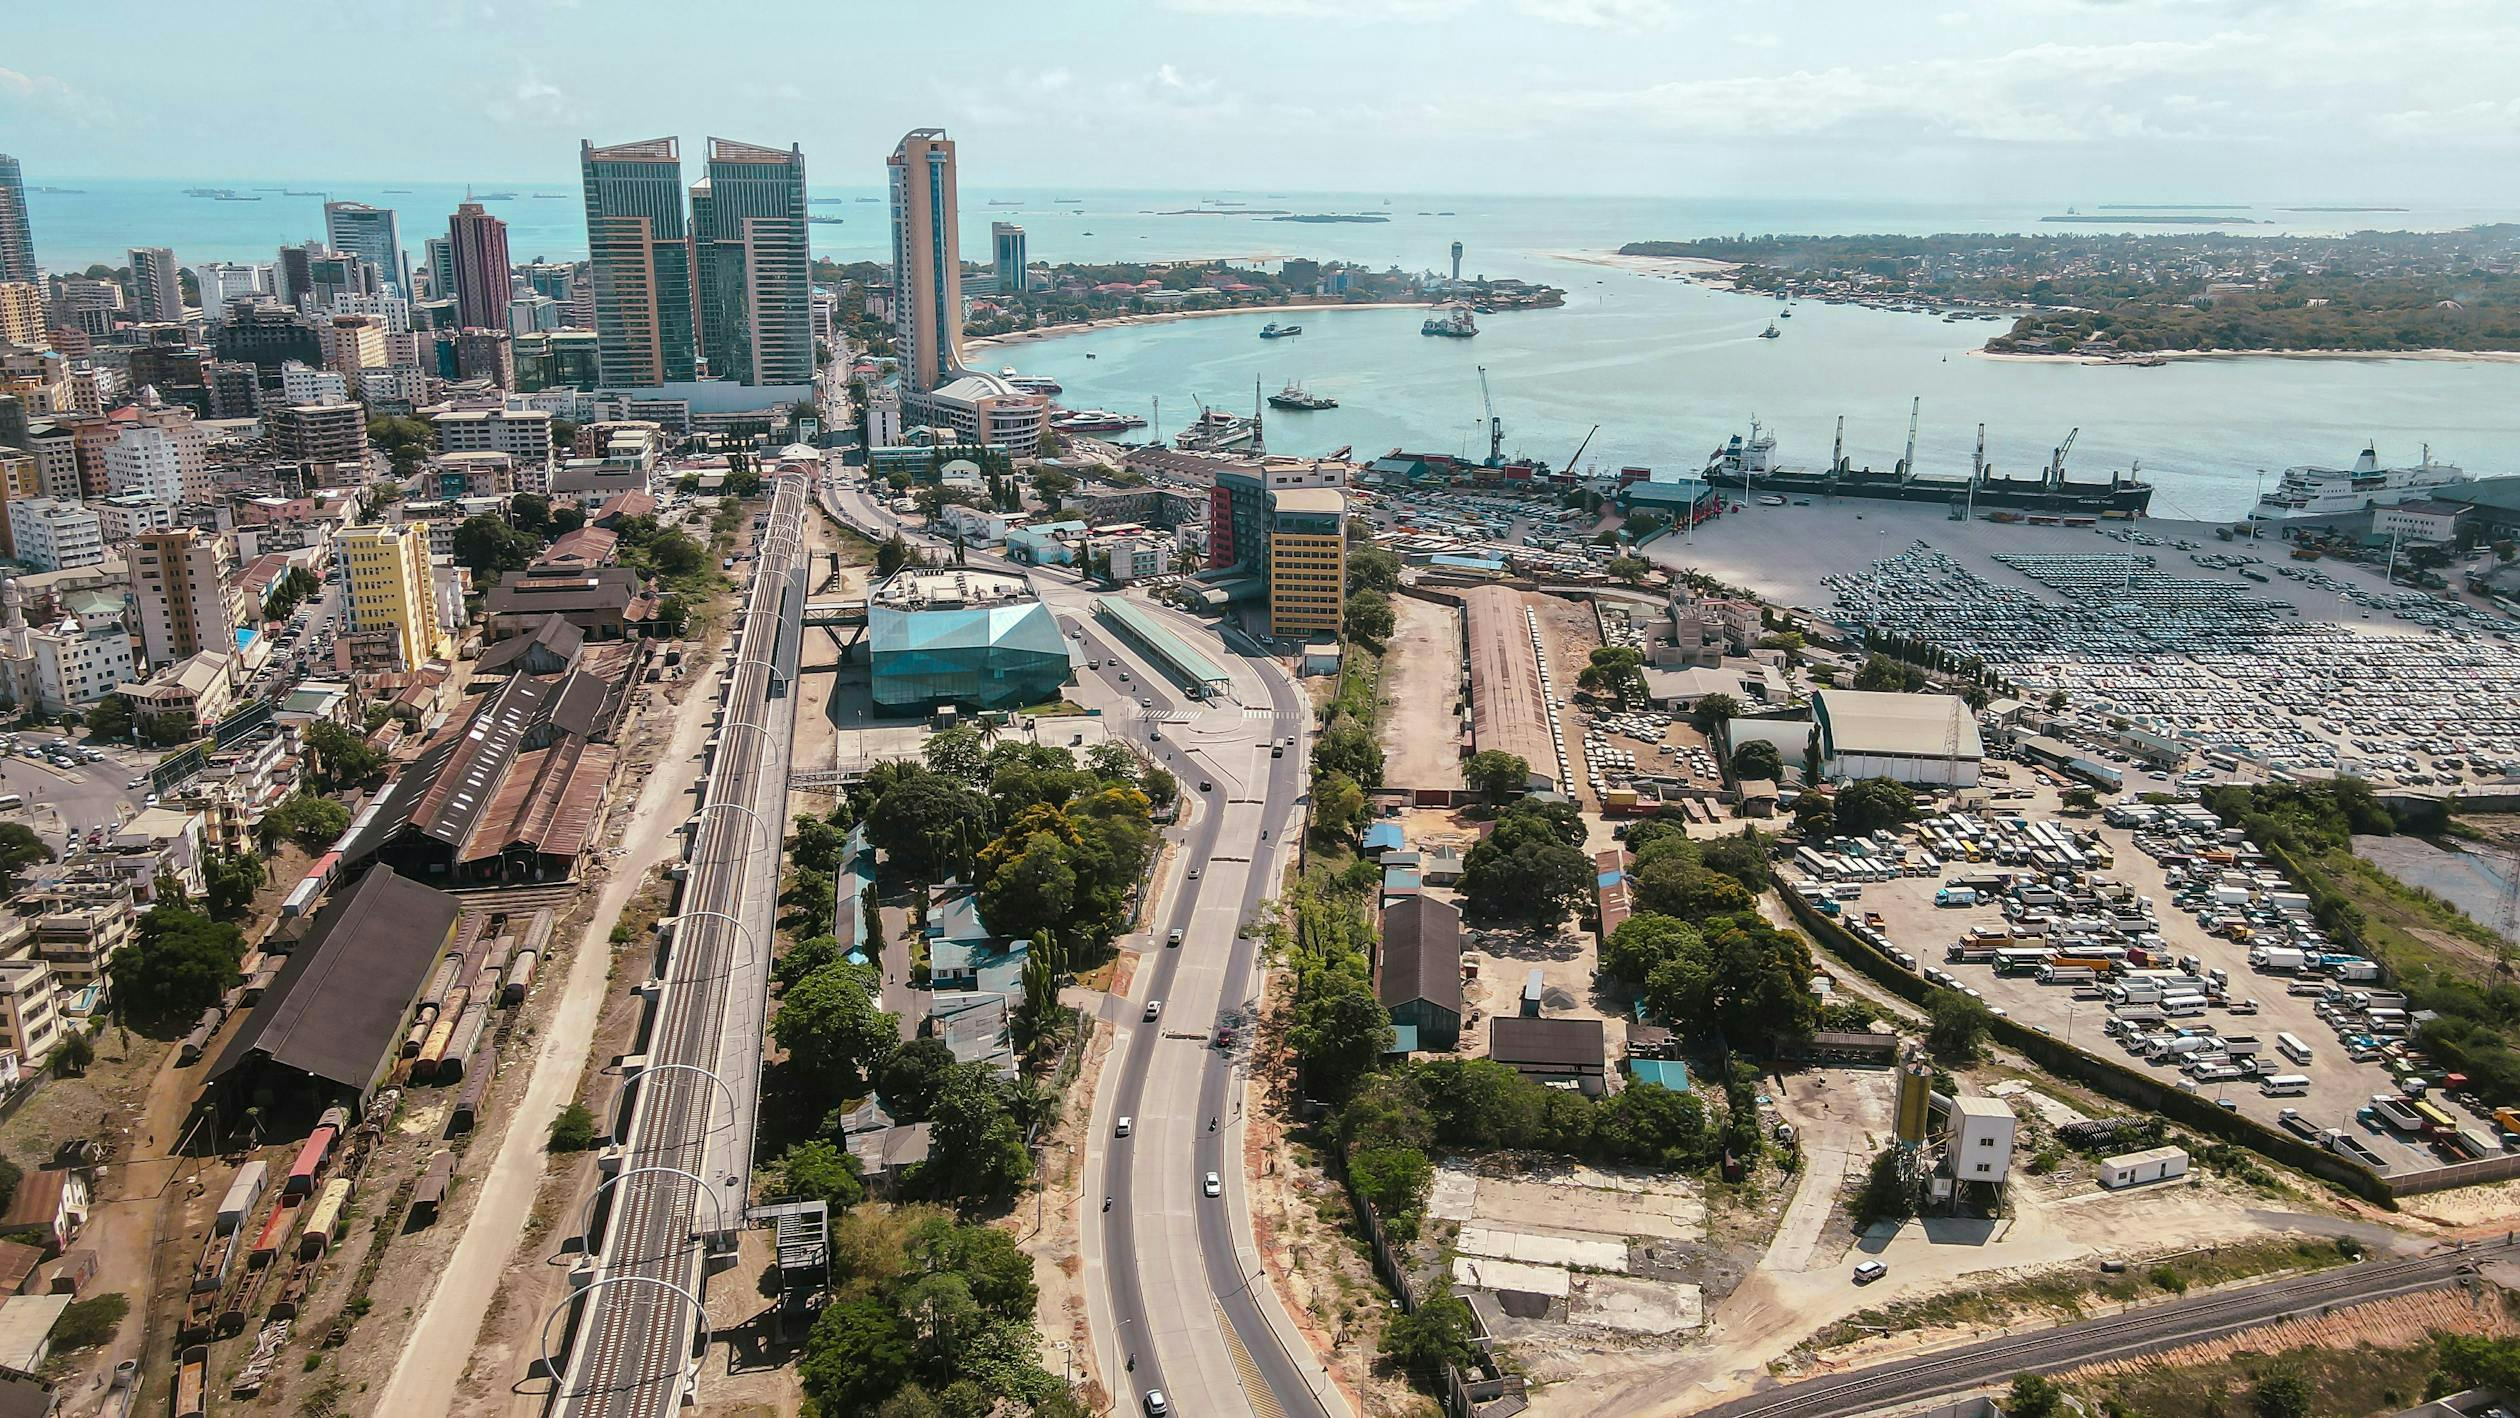 View of Dar es Salaam